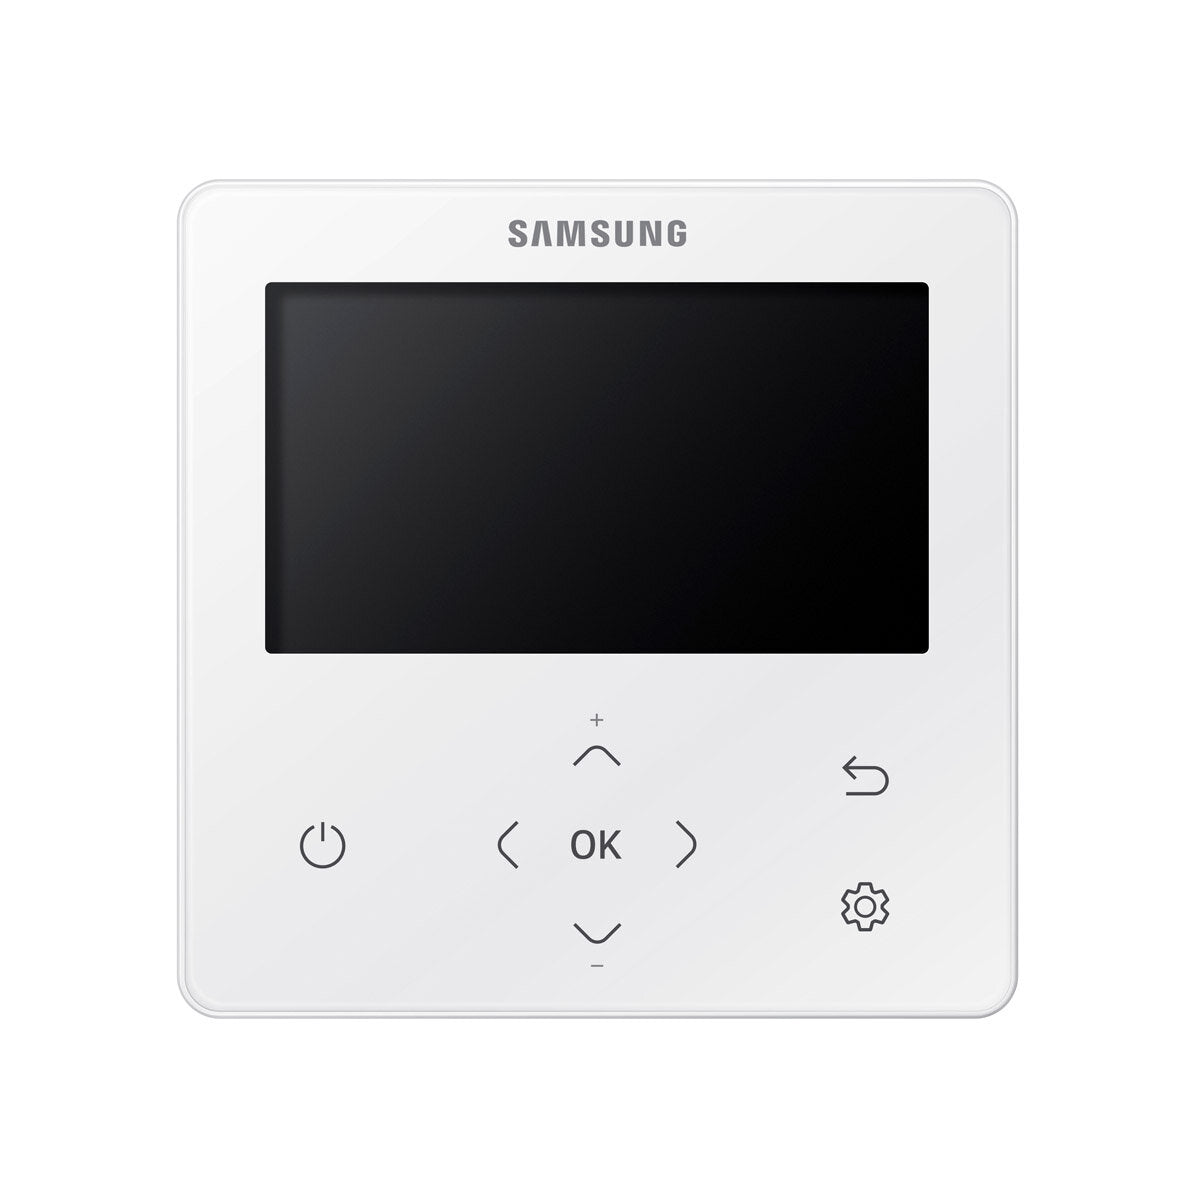 Samsung Air Conditioner WindFree Cassette 1 Way penta split 9000 + 9000 + 9000 + 12000 + 12000 BTU inverter A ++ outdoor unit 10.0 kW